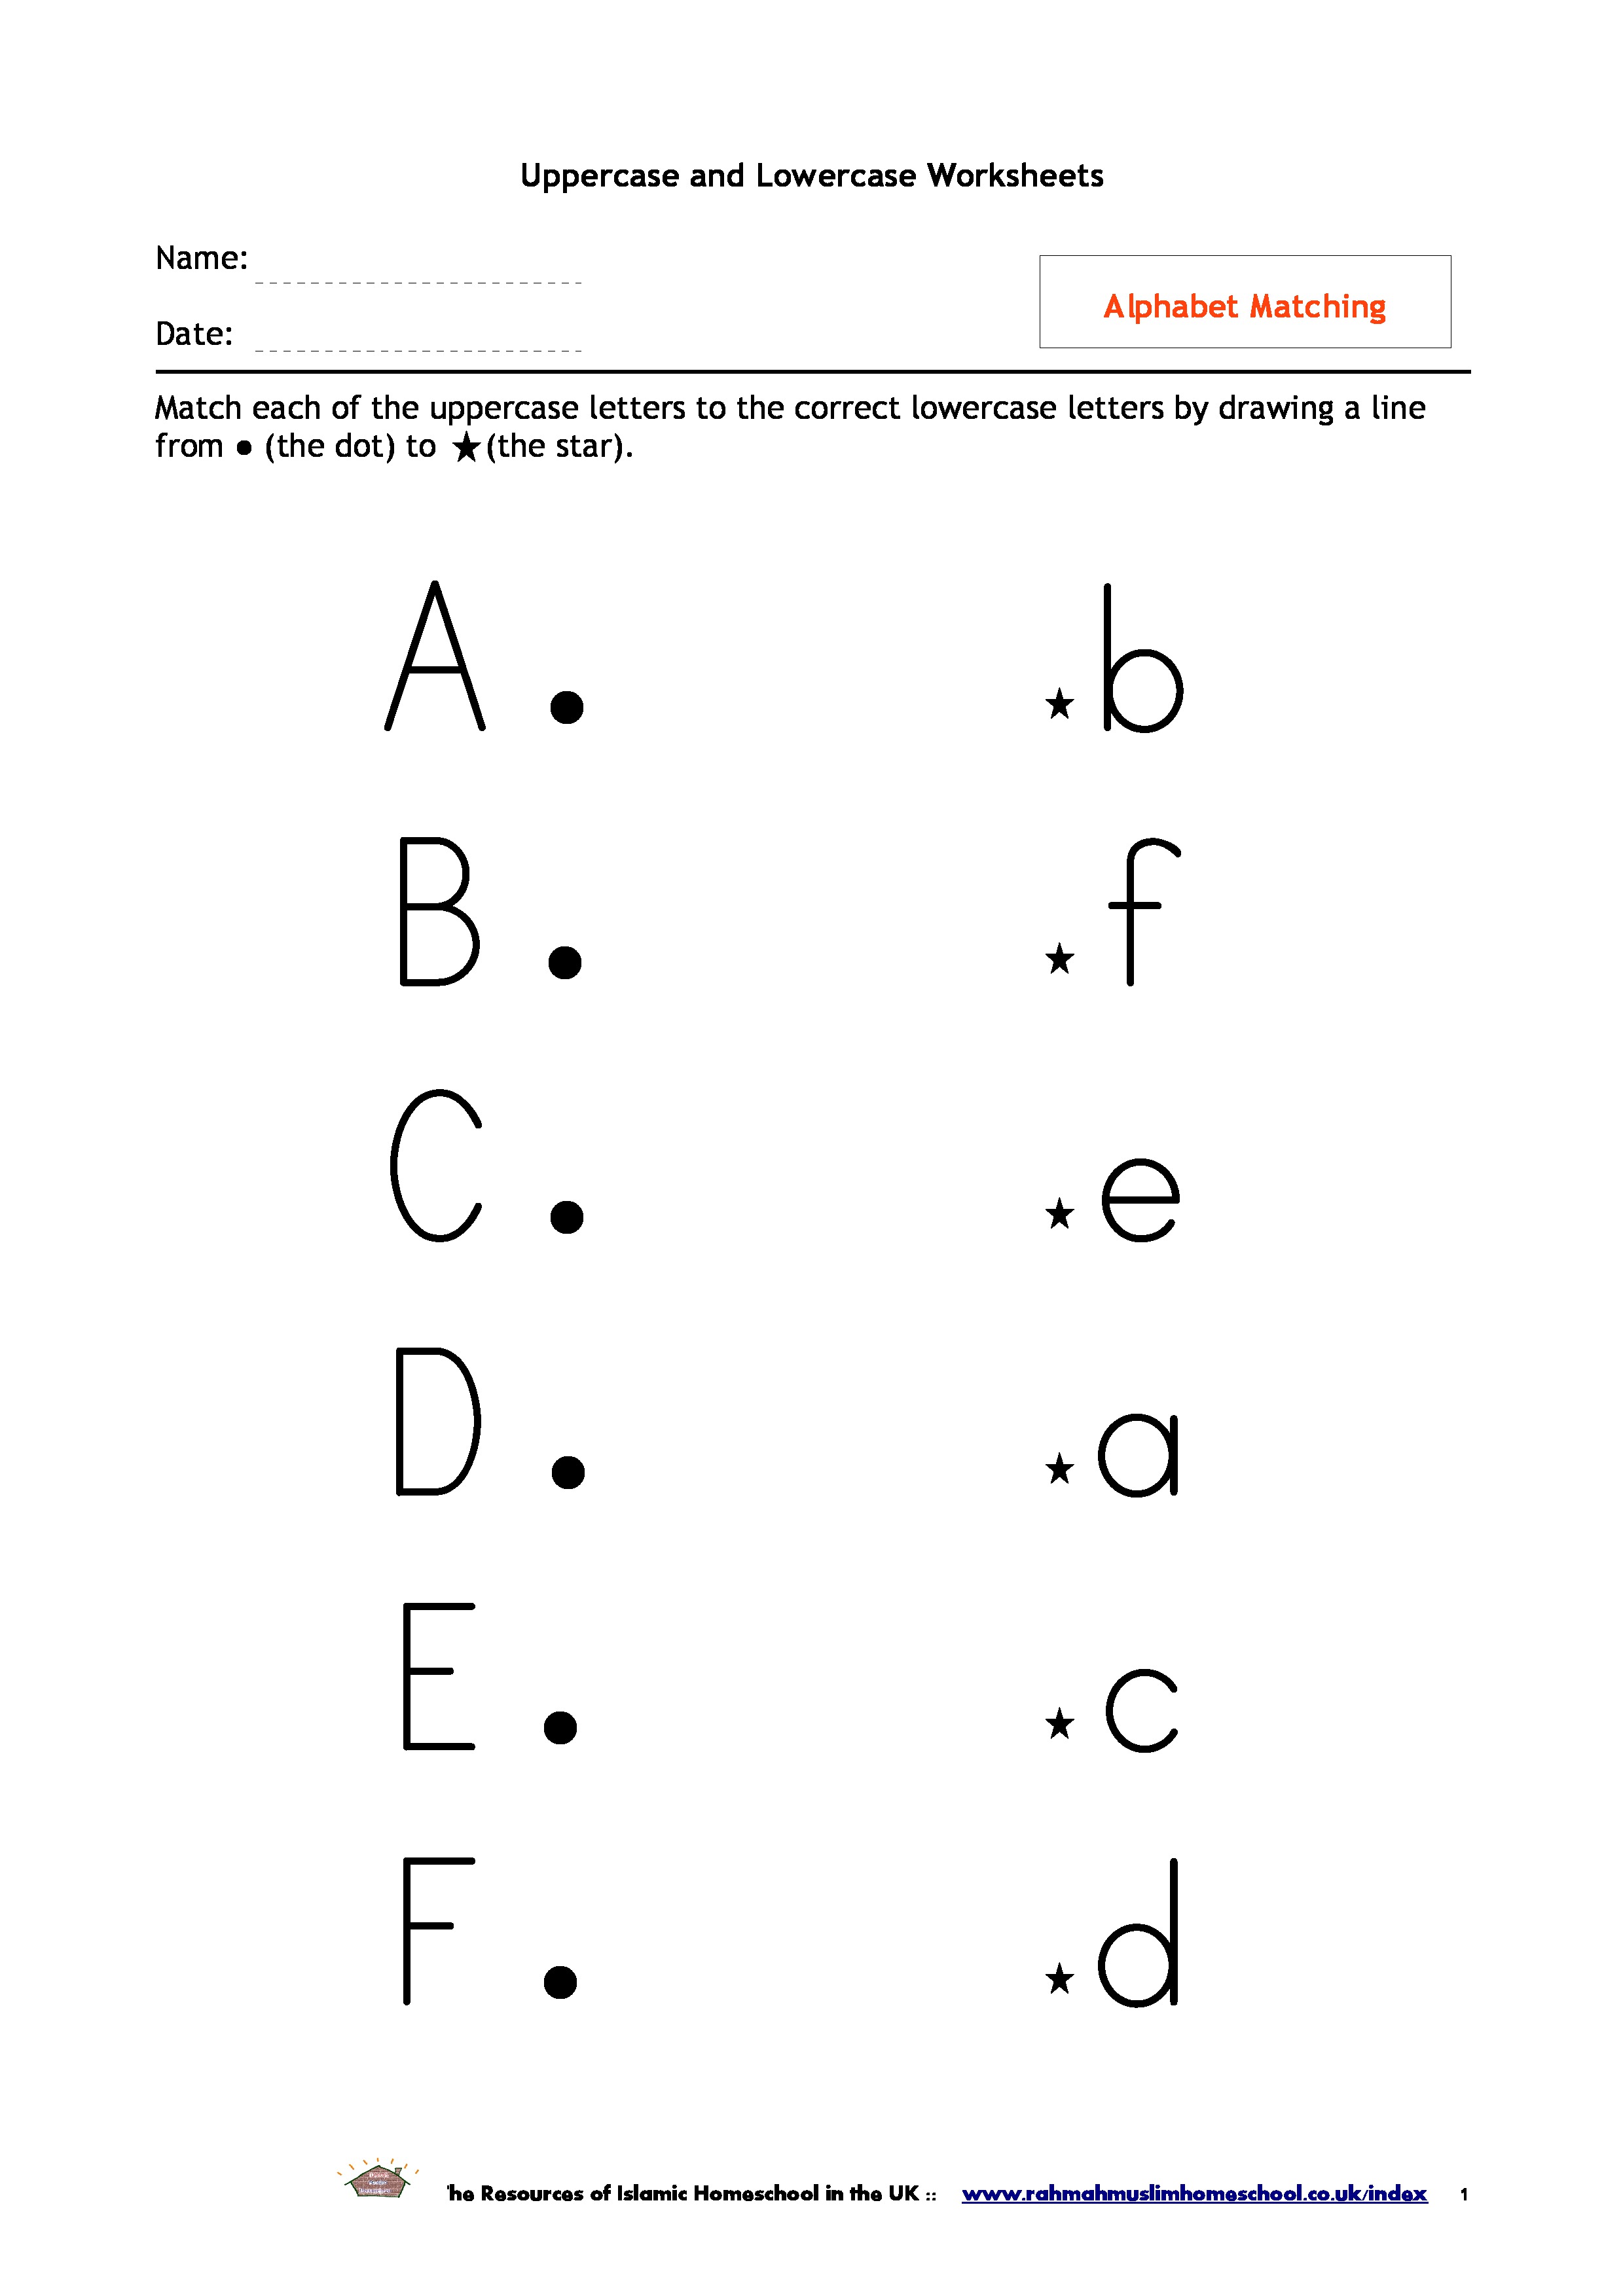 Alphabet Uppercase and Lowercase Matching Worksheet Image